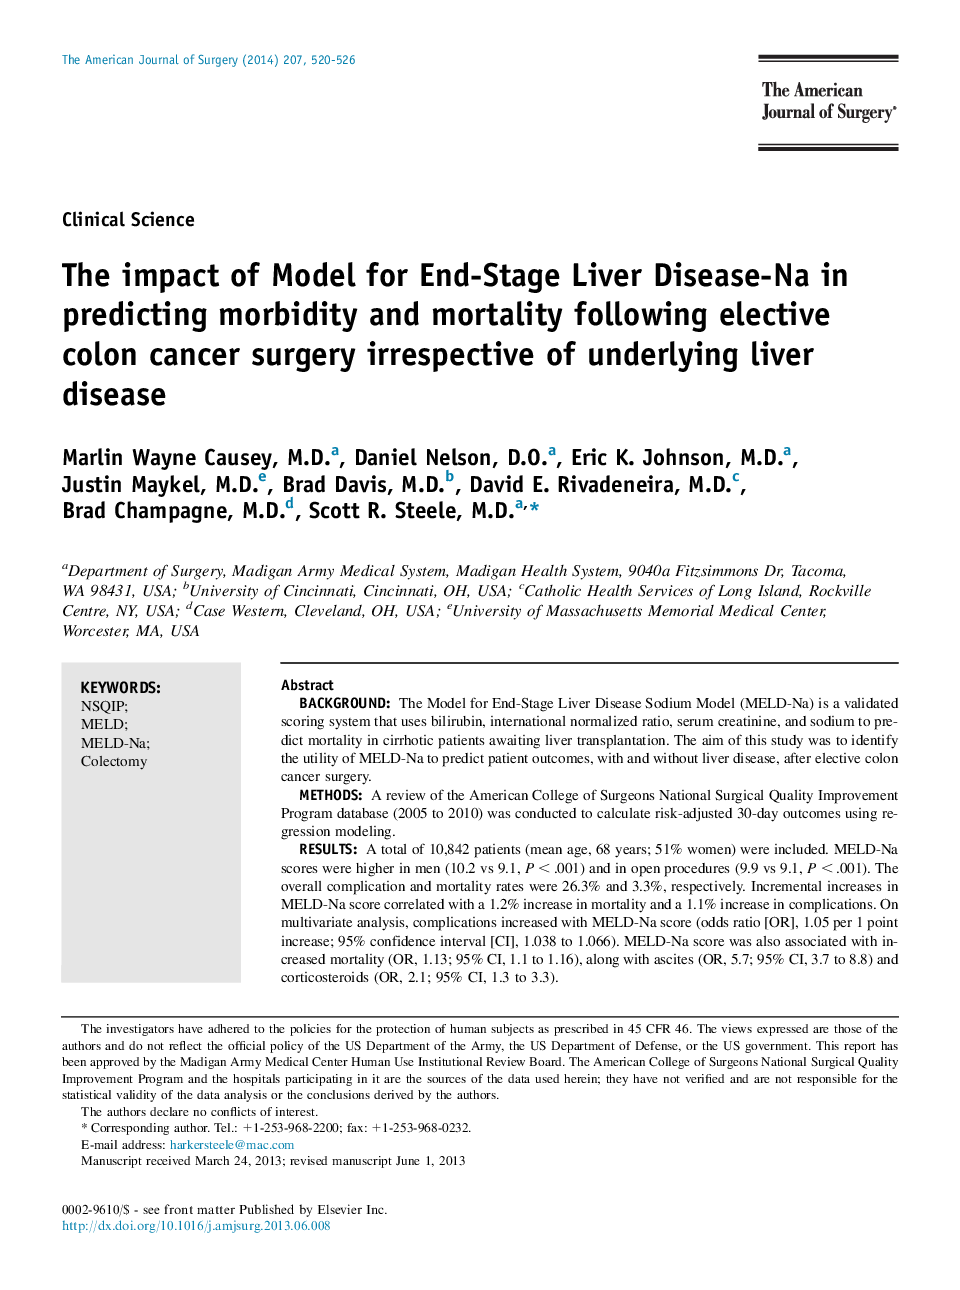 تاثیر مدل بیماری کبد نای-پایان مرحله نهایی در پیش بینی مرگ و میر ناشی از جراحی سرطان انتخابی کولون بدون در نظر گرفتن بیماری کبدی اساسی 